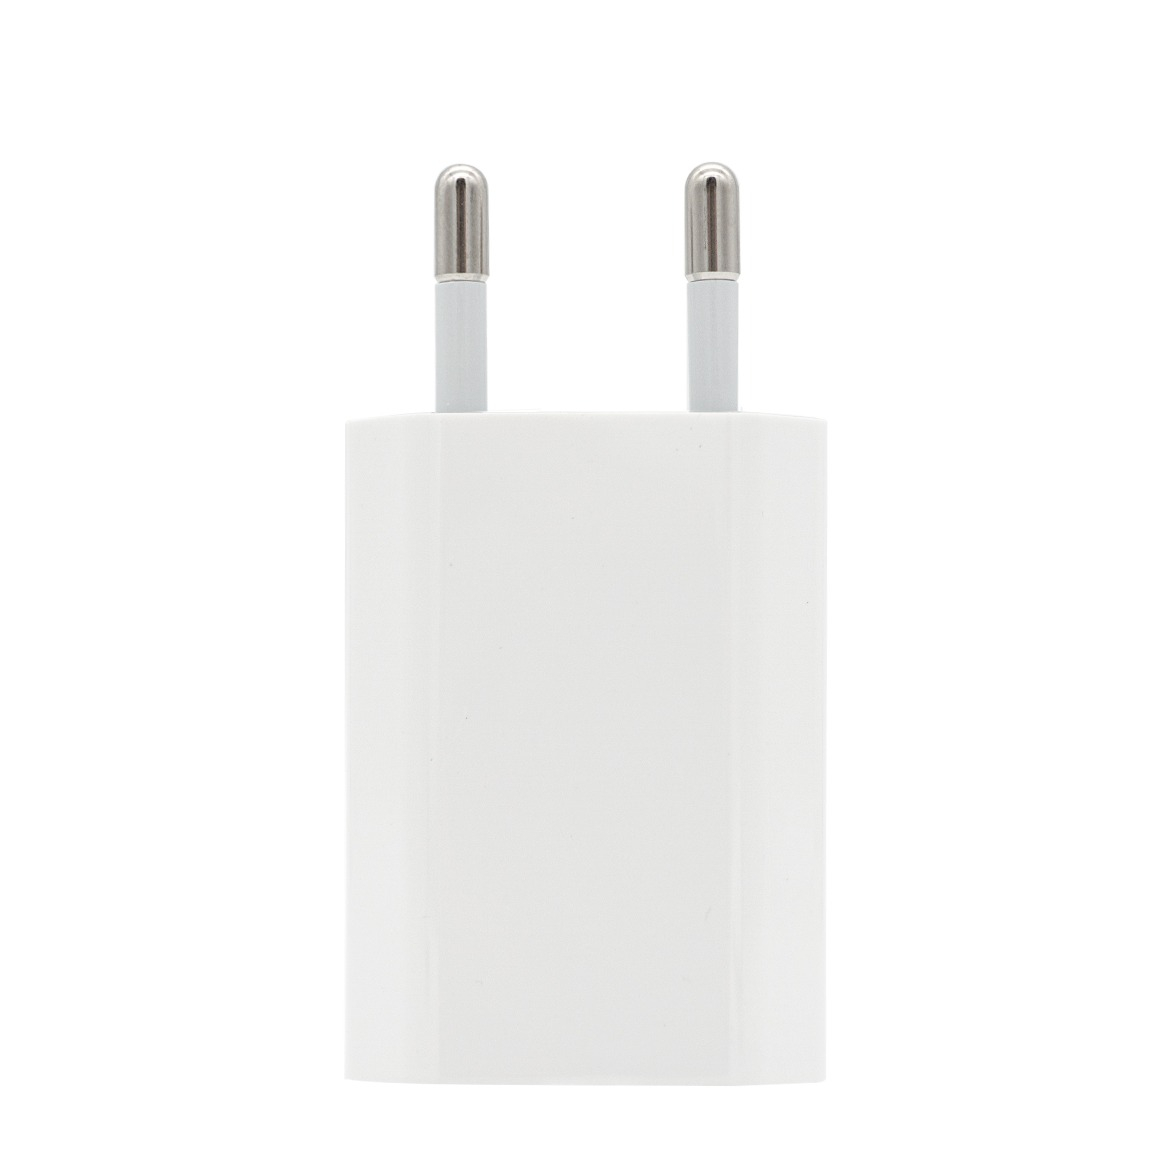 Apple MD813ZM/A 5W Ladegerät USB Netzteil iPhone